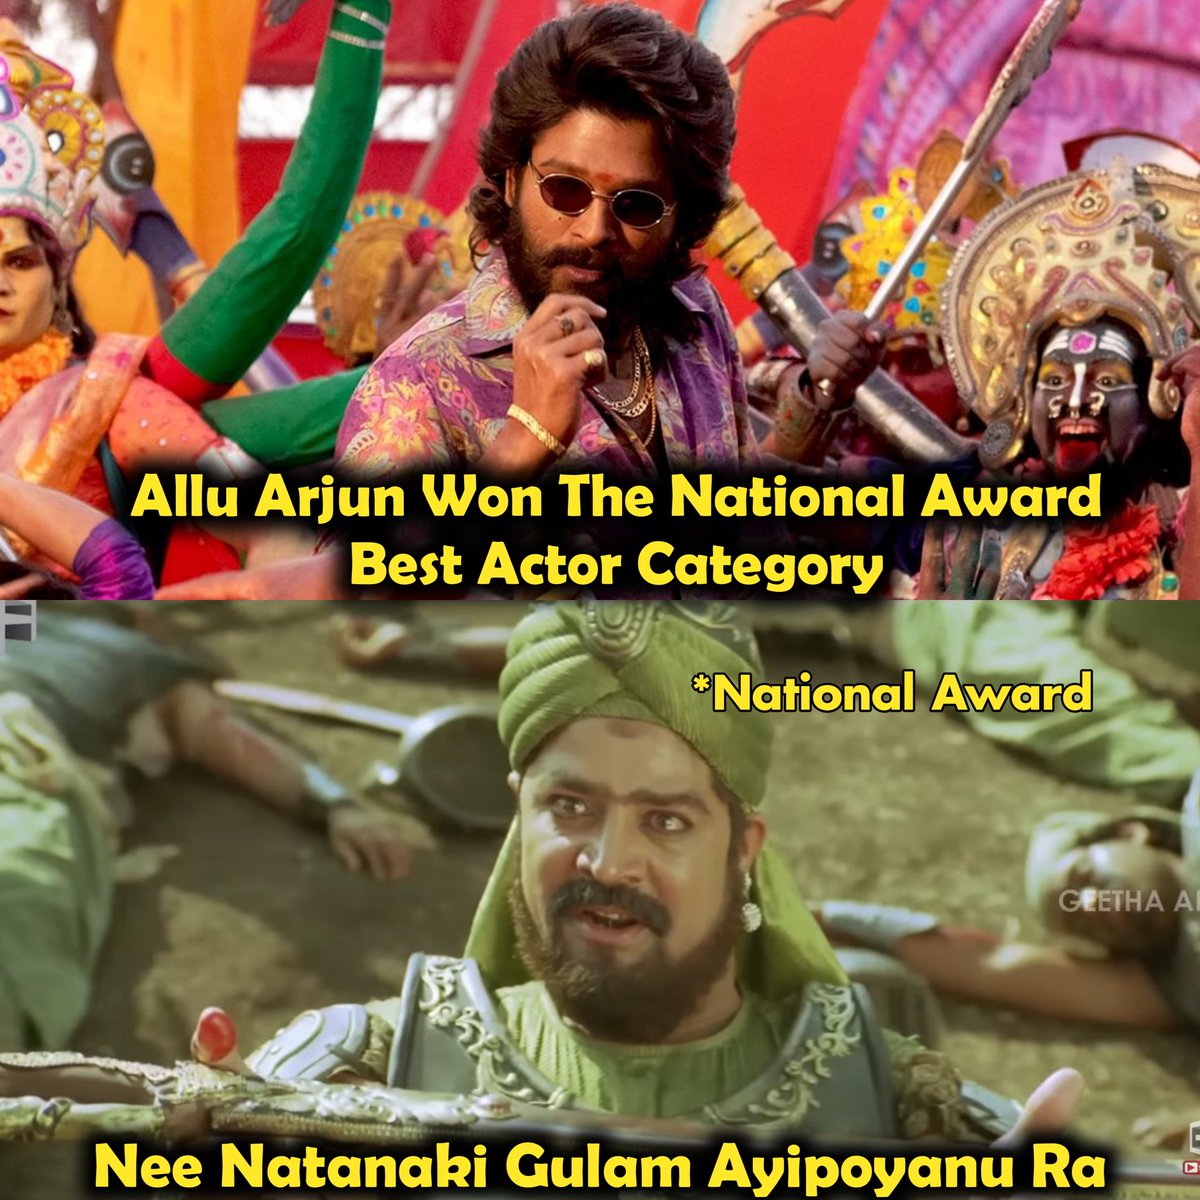 Nee Acting Ki National Award Ye Gulam Aindi @alluarjun Anna 💙😘

#PushpaTheRise || #NationalAwards